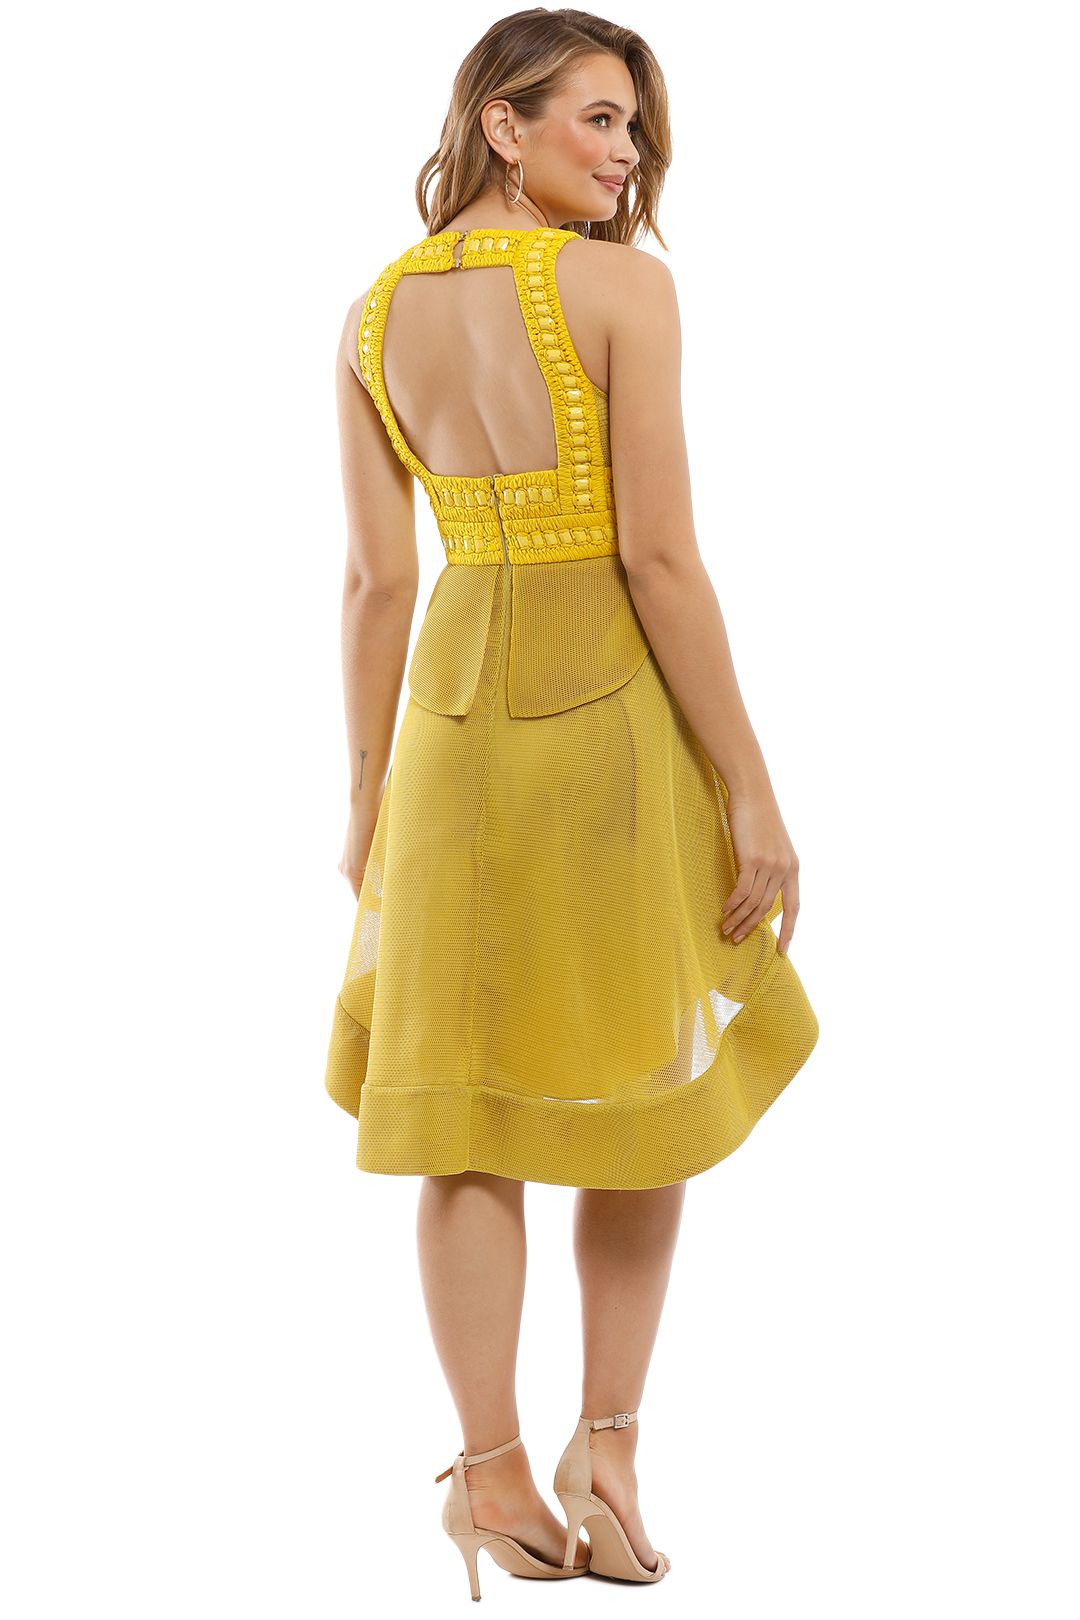 Thurley - Sahara Dress - Yellow - Back